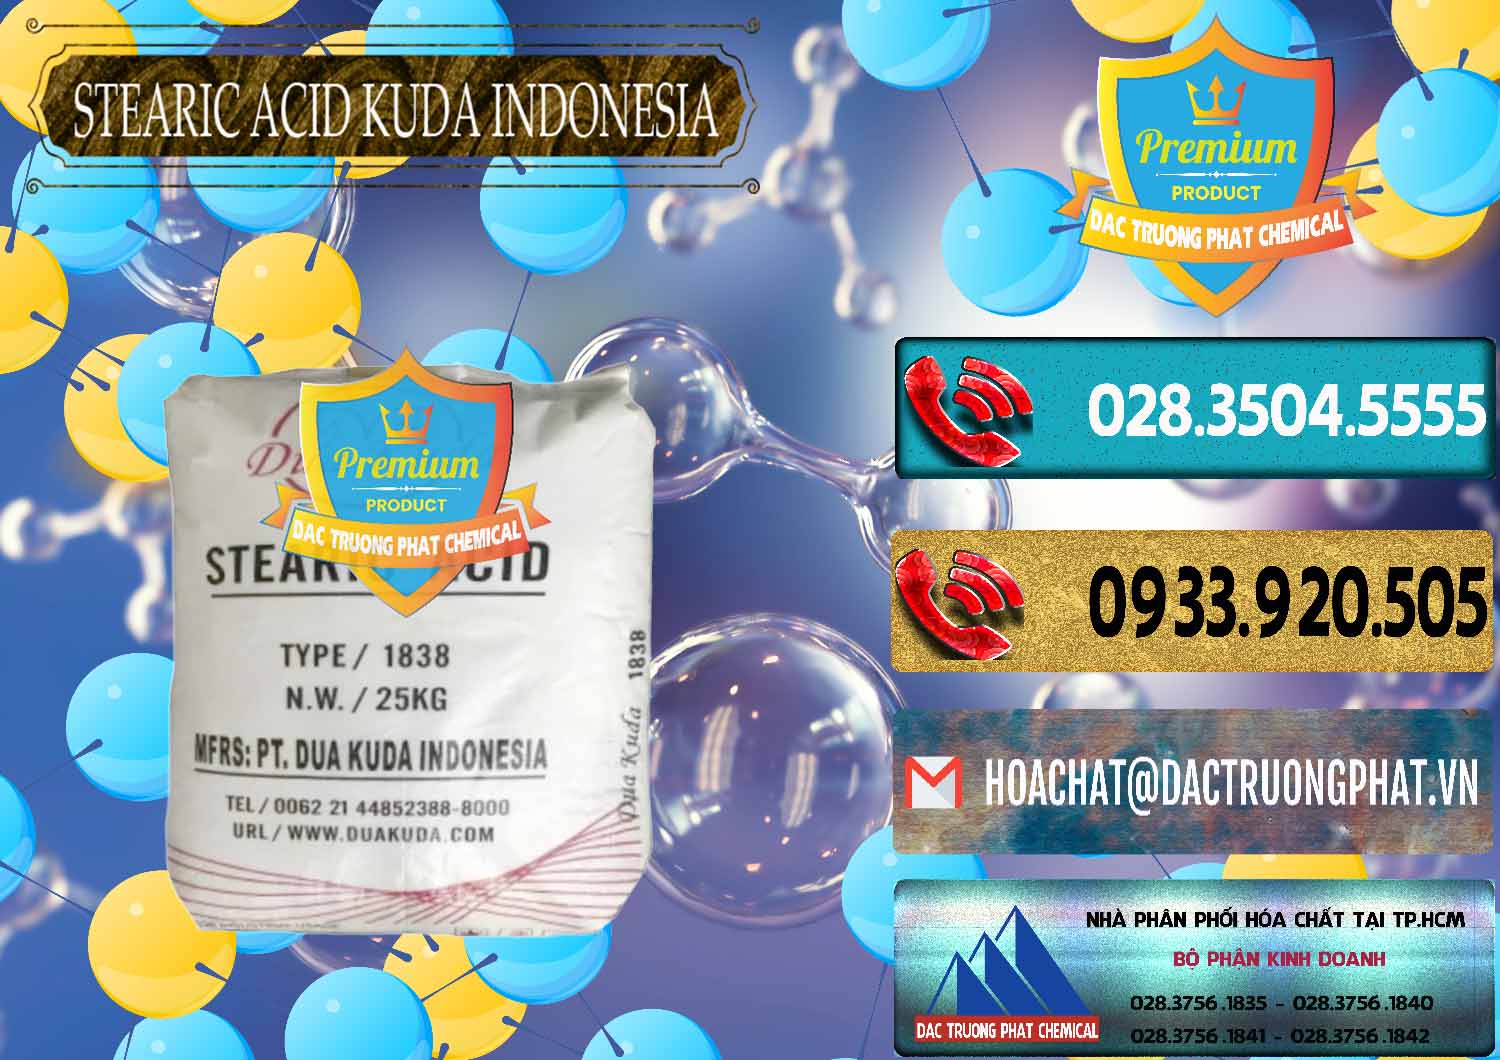 Nơi bán và cung cấp Axit Stearic - Stearic Acid Dua Kuda Indonesia - 0388 - Cty chuyên bán và phân phối hóa chất tại TP.HCM - hoachatdetnhuom.com